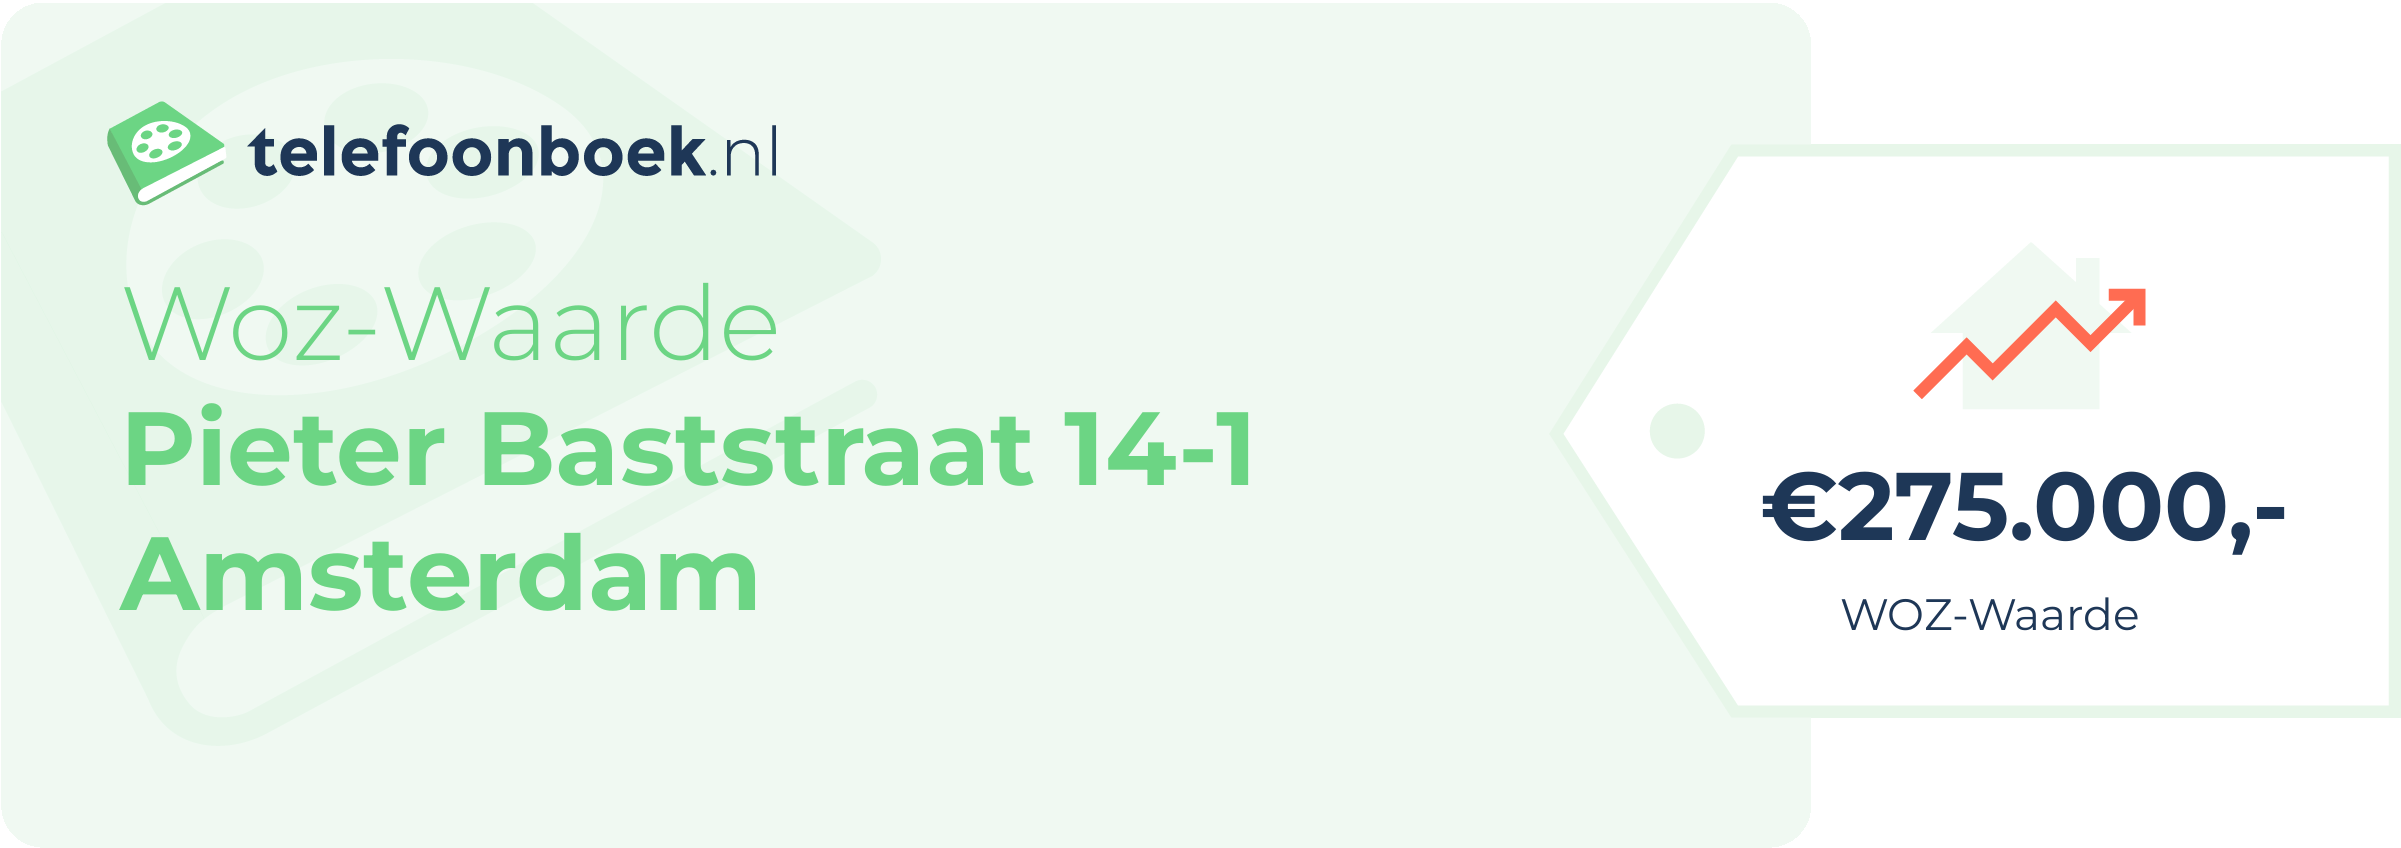 WOZ-waarde Pieter Baststraat 14-1 Amsterdam